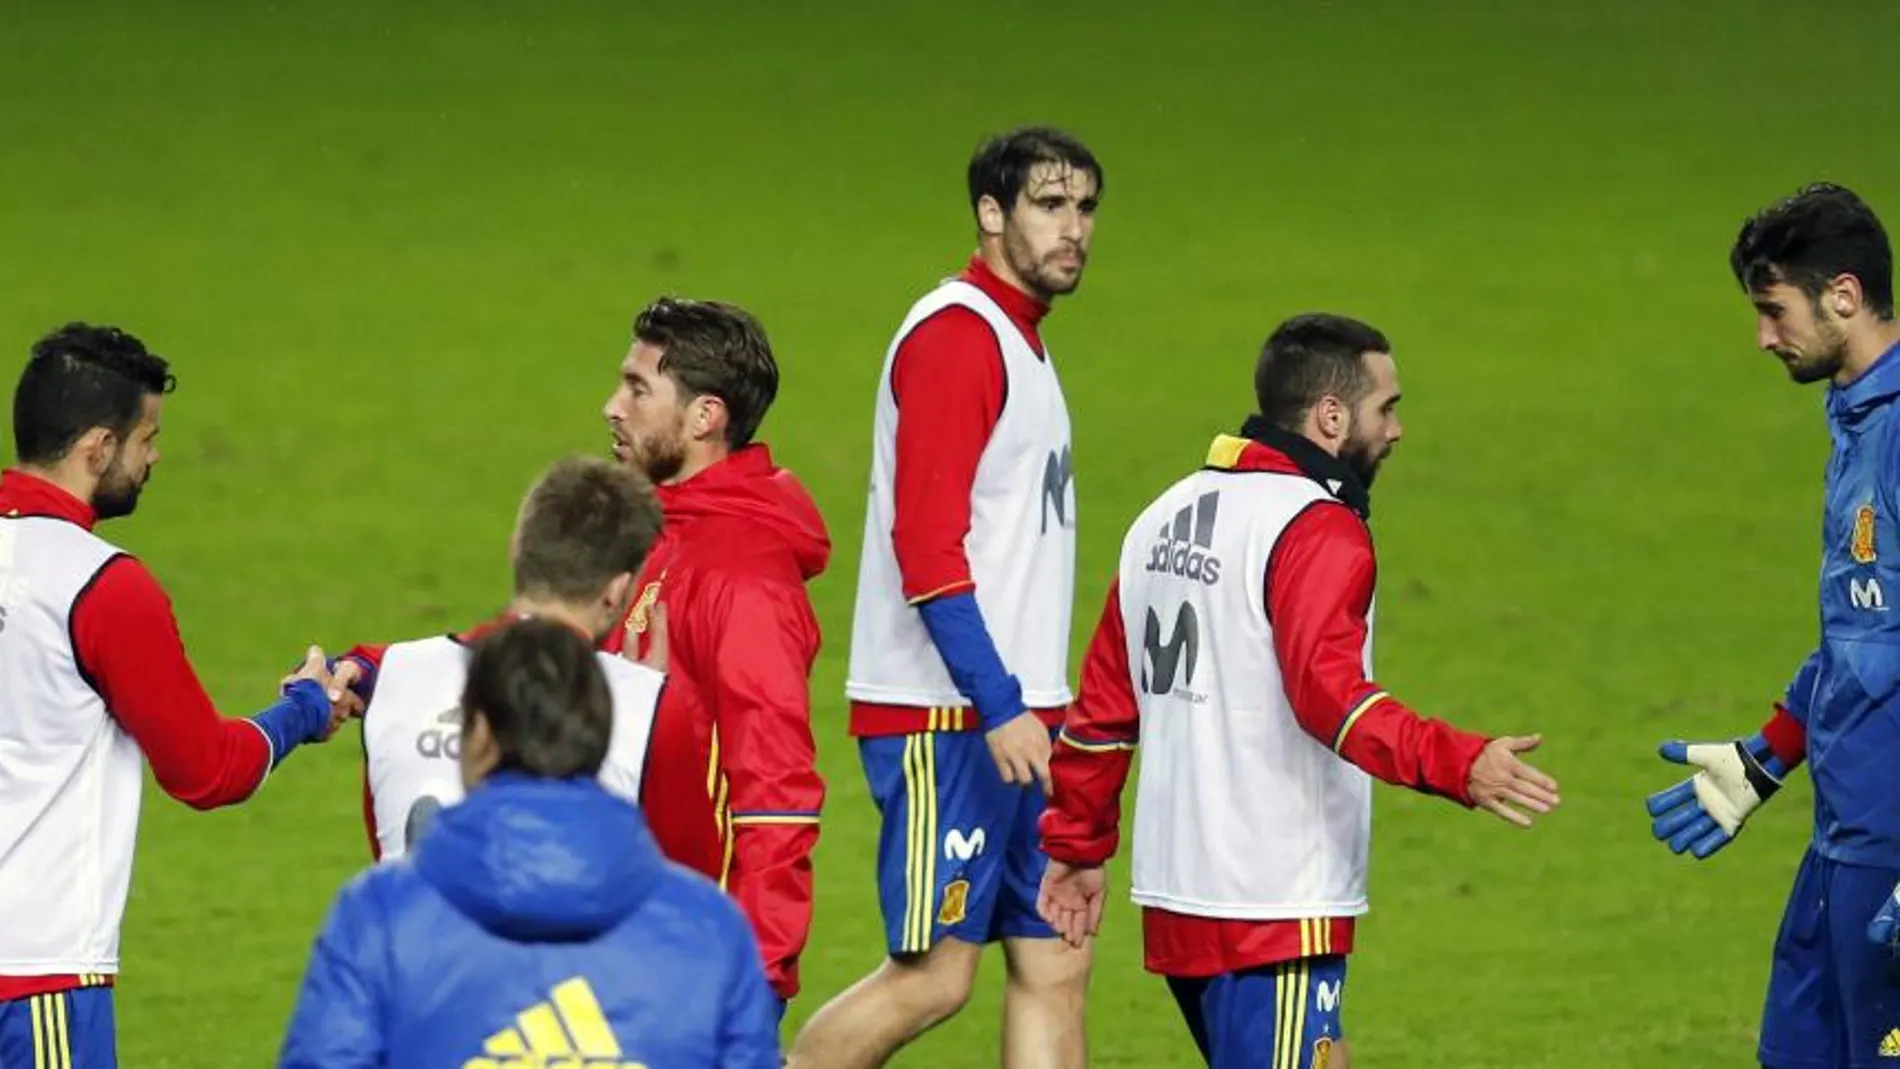 Los jugadores de la selección española Sergio Ramos y Diego Costa; y Dani Carvajal y Sergio Rico, se saludan durante el entrenamiento en el estadio El Molinón